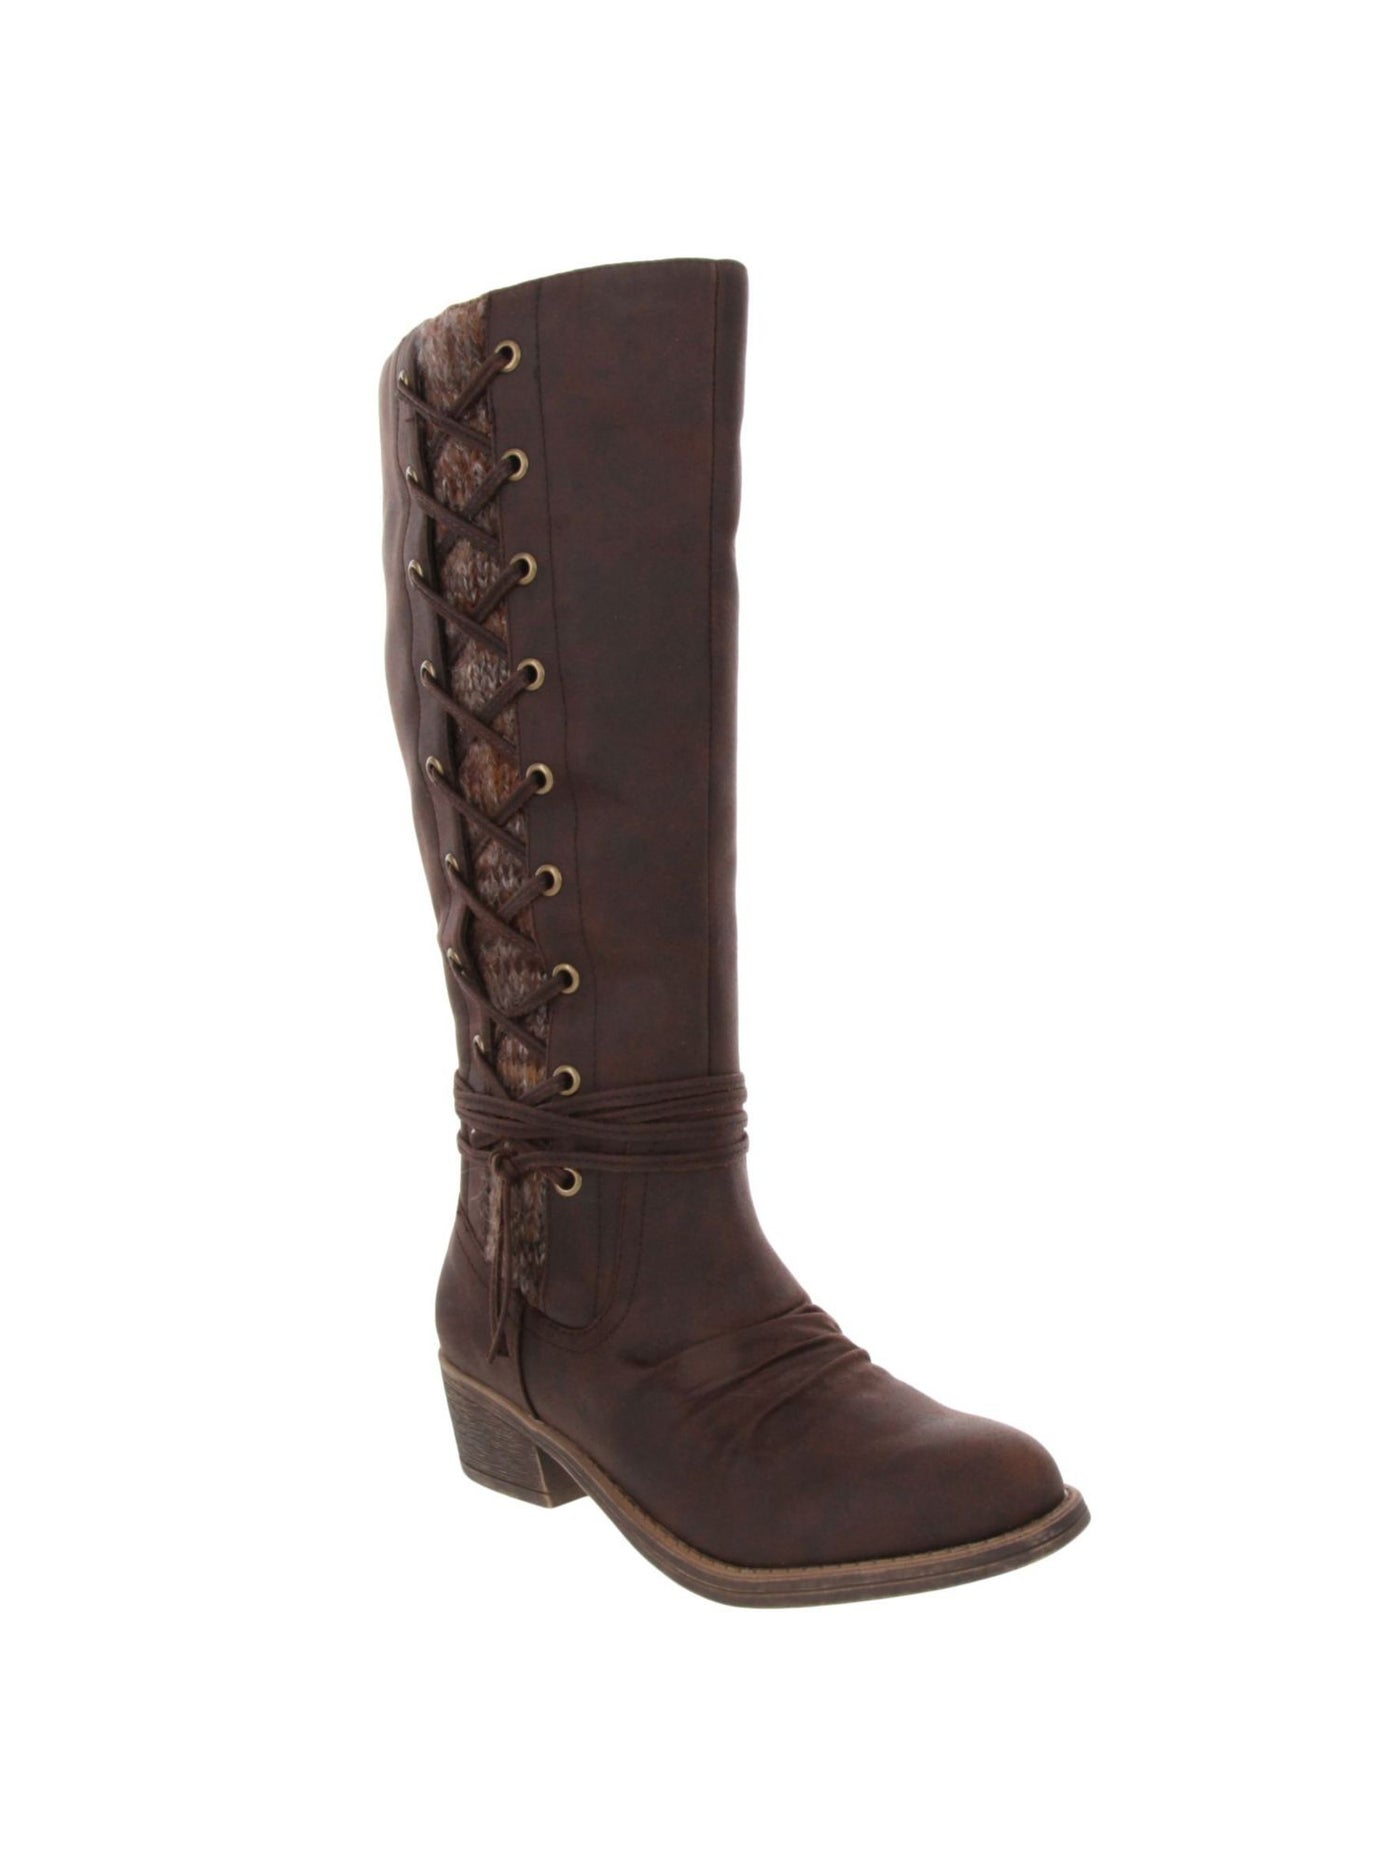 SUGAR Womens Brown Comfort Tacks Almond Toe Block Heel Zip-Up Boots Shoes 11